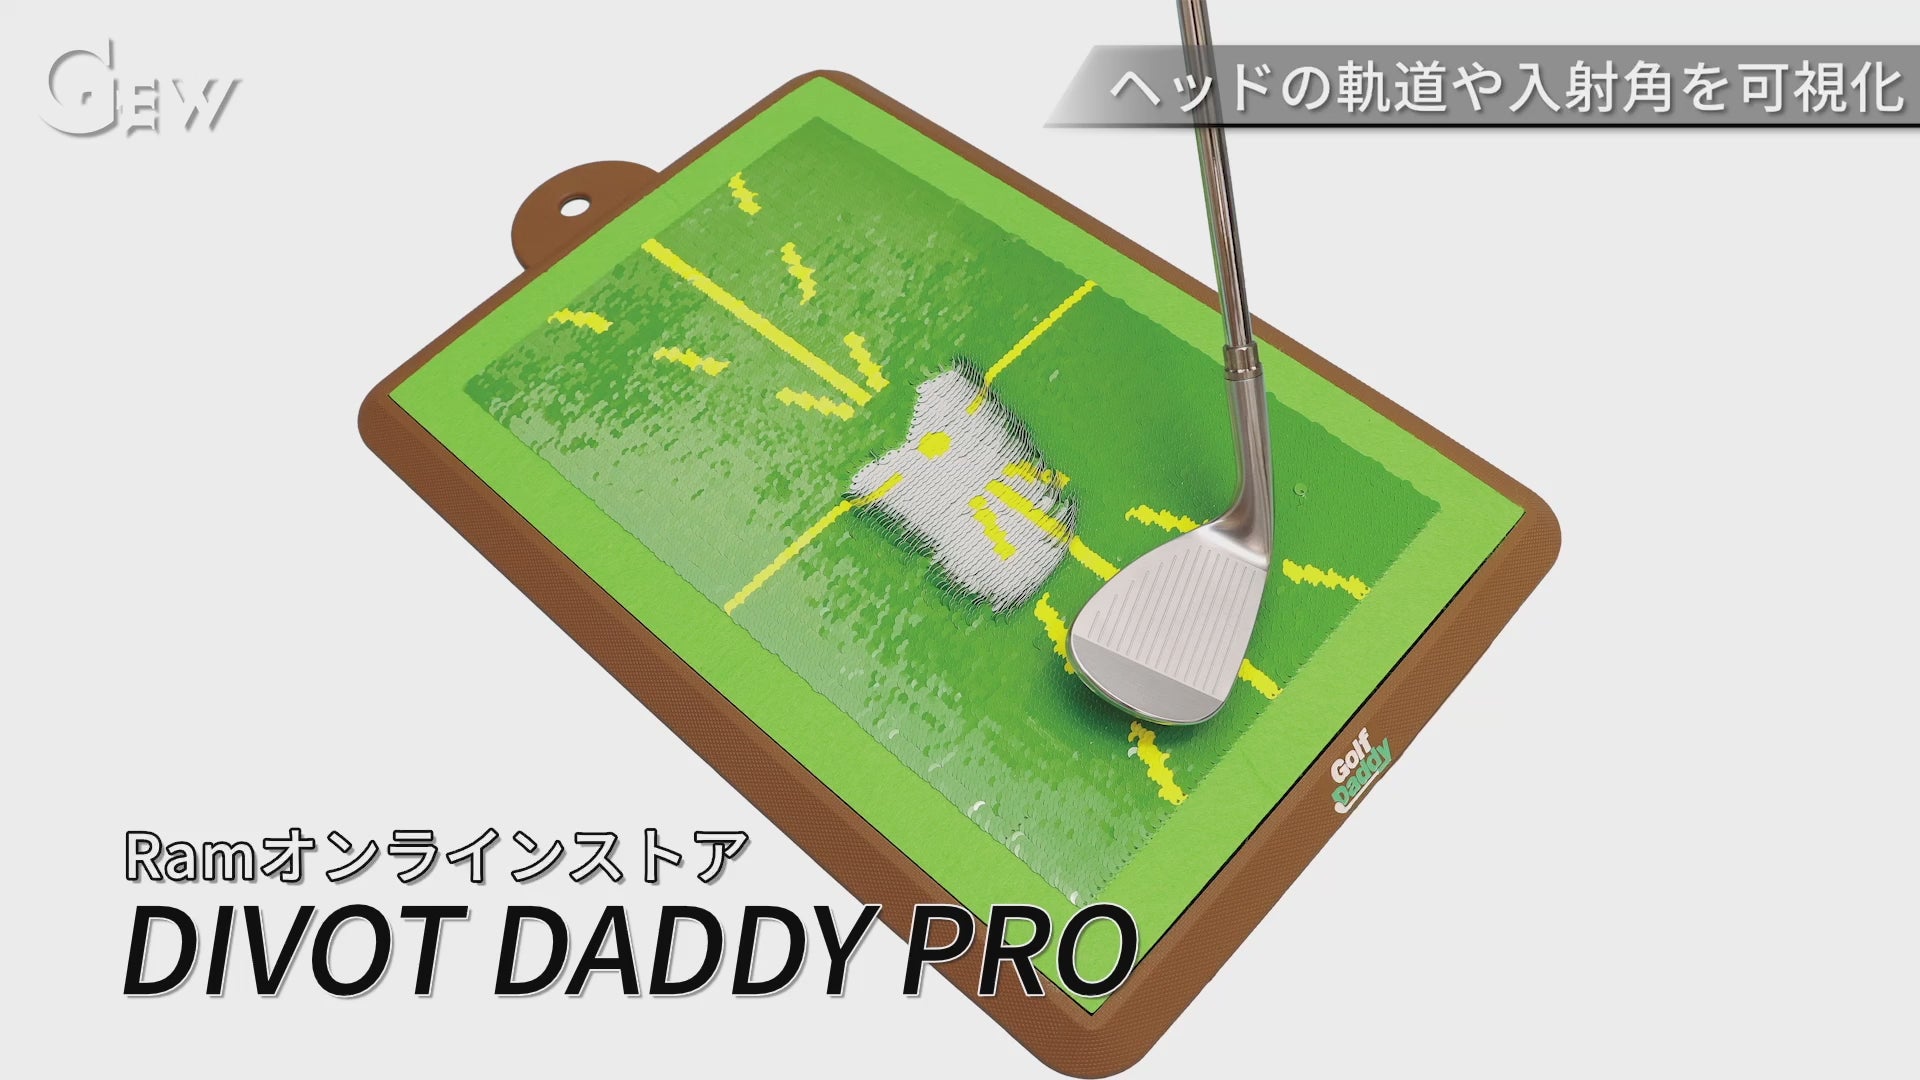 Golf Daddy Japan ｜ショット跡が白く残る新感覚ゴルフスイング練習器具